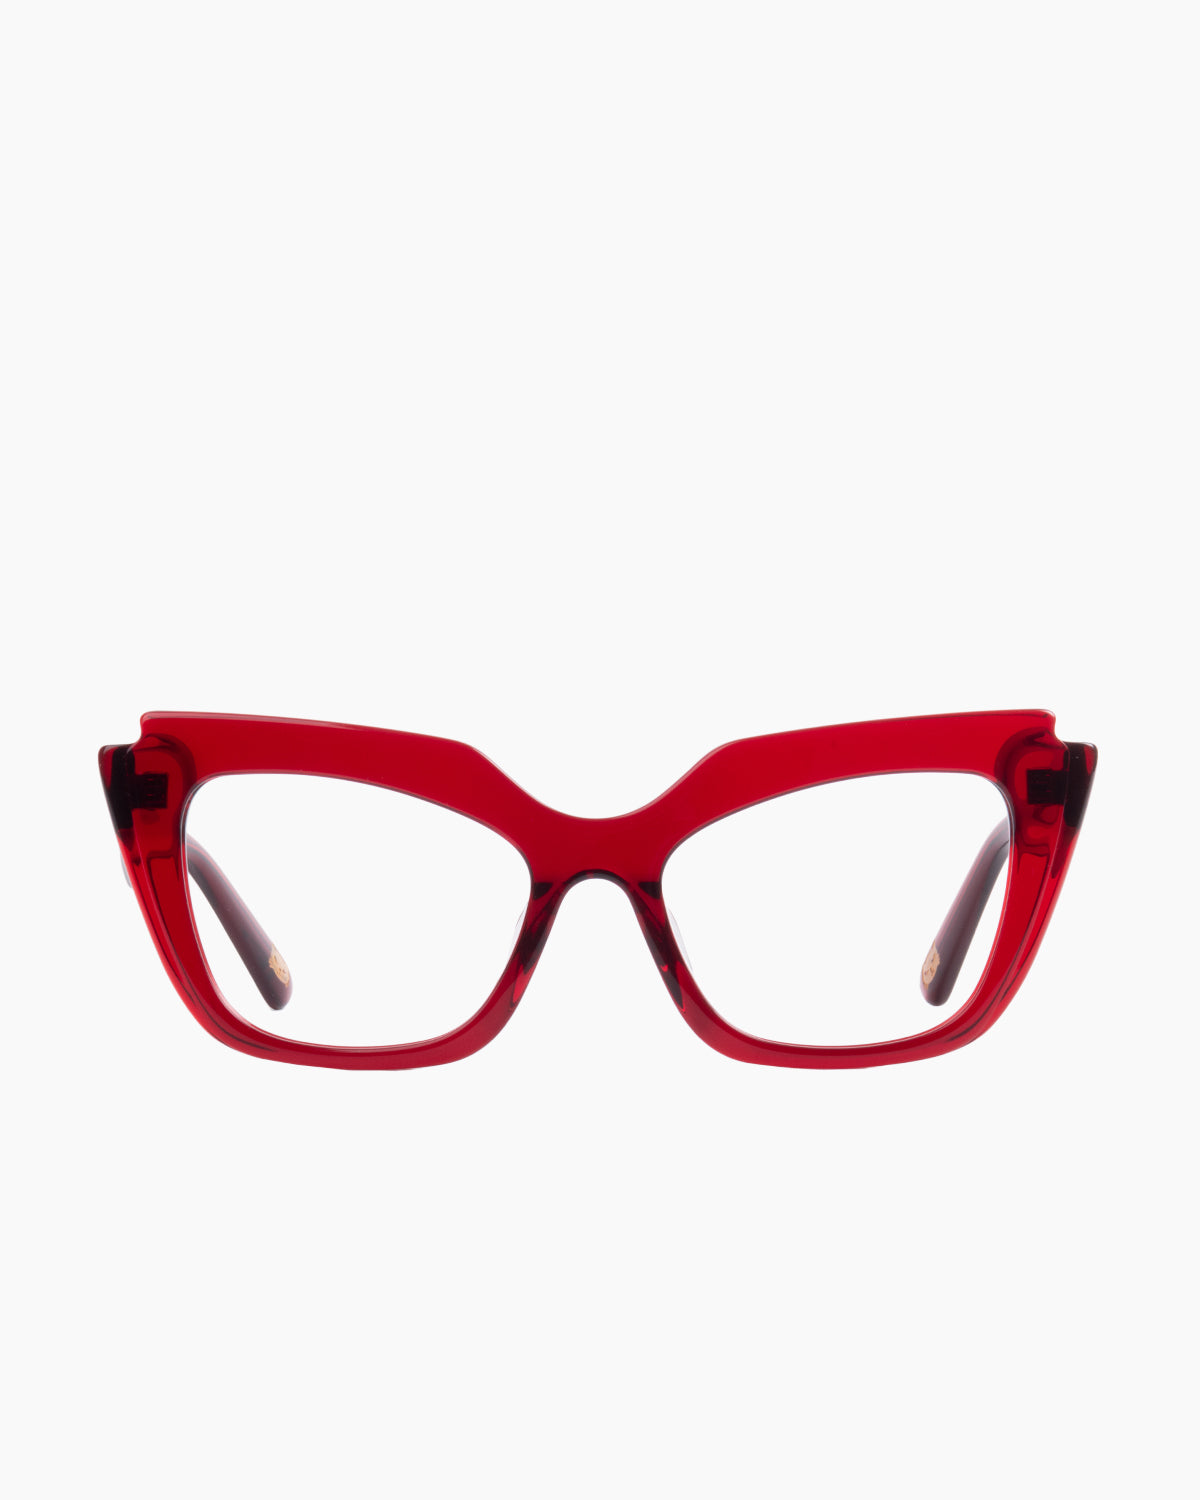 Spectacleeyeworks - parisa - c730 | glasses bar